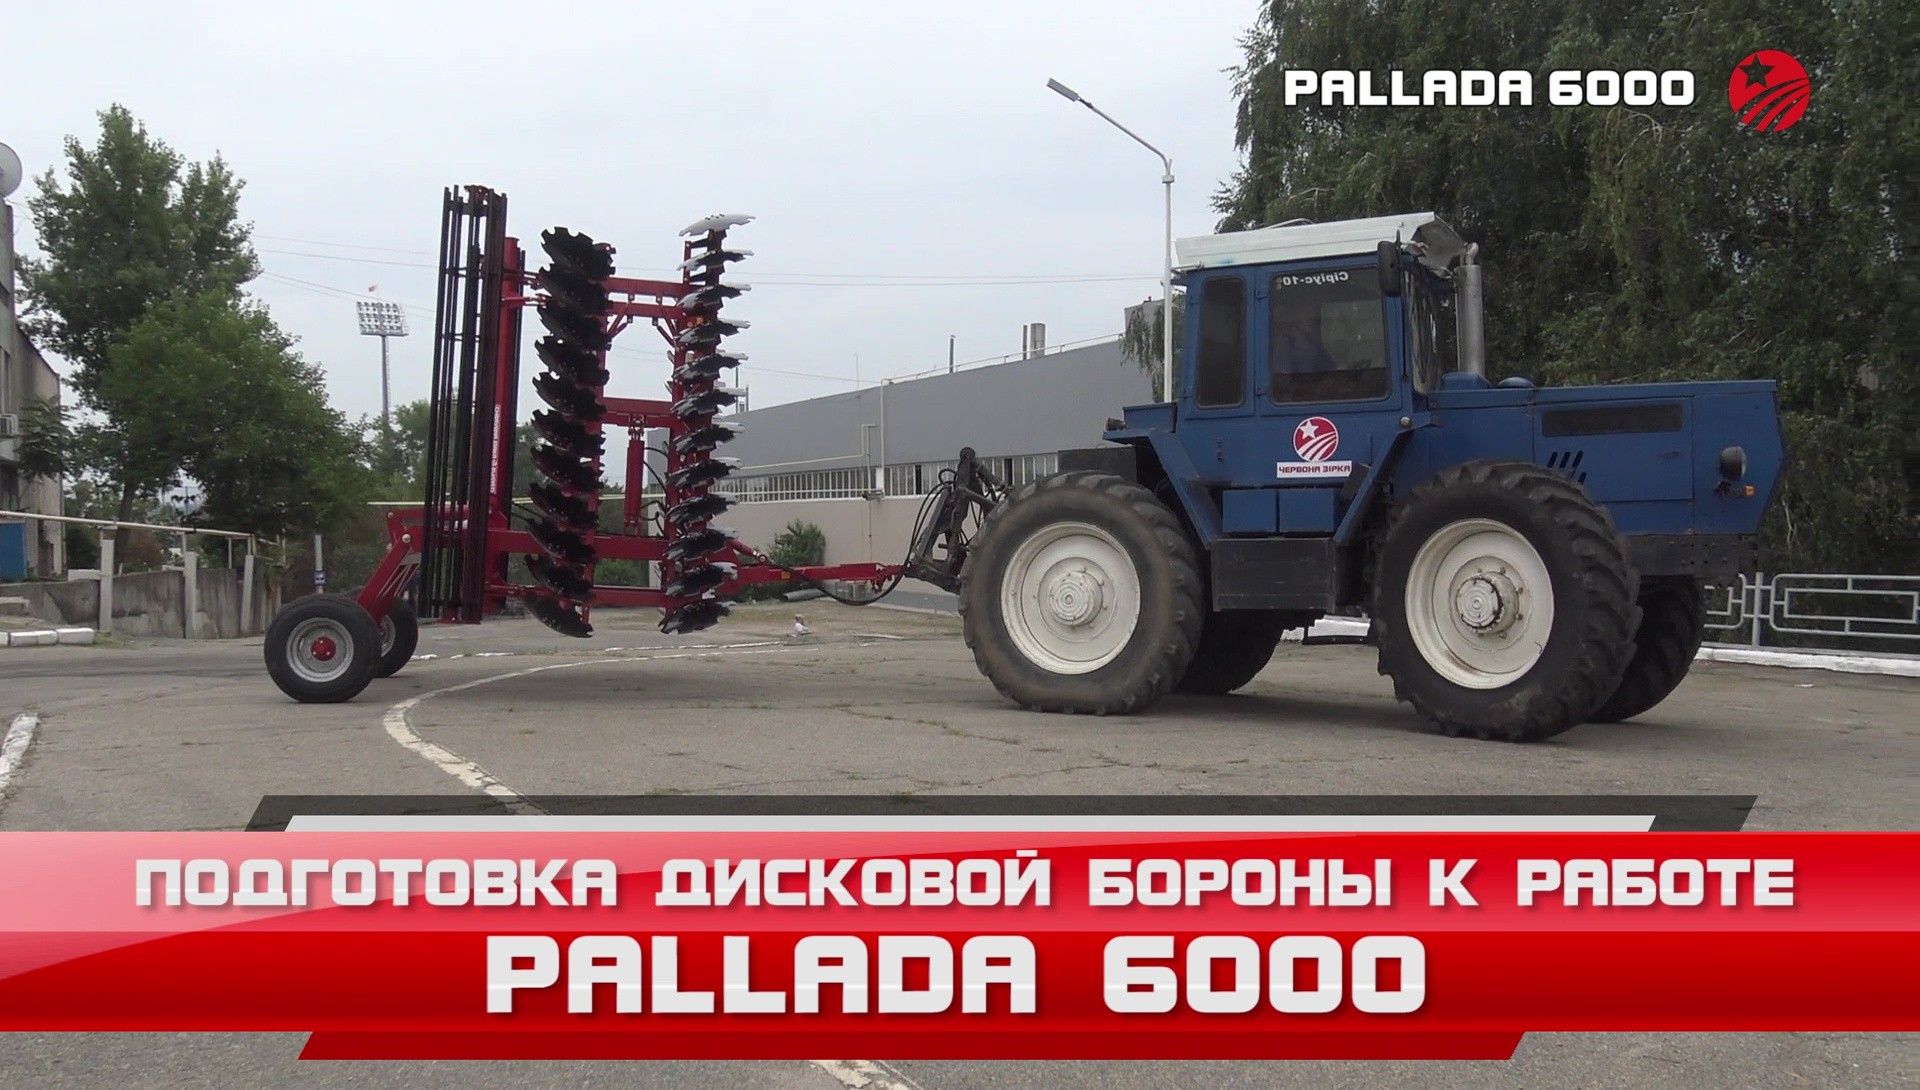 Pallada 6000 - Основні настройки та підготовка до роботи